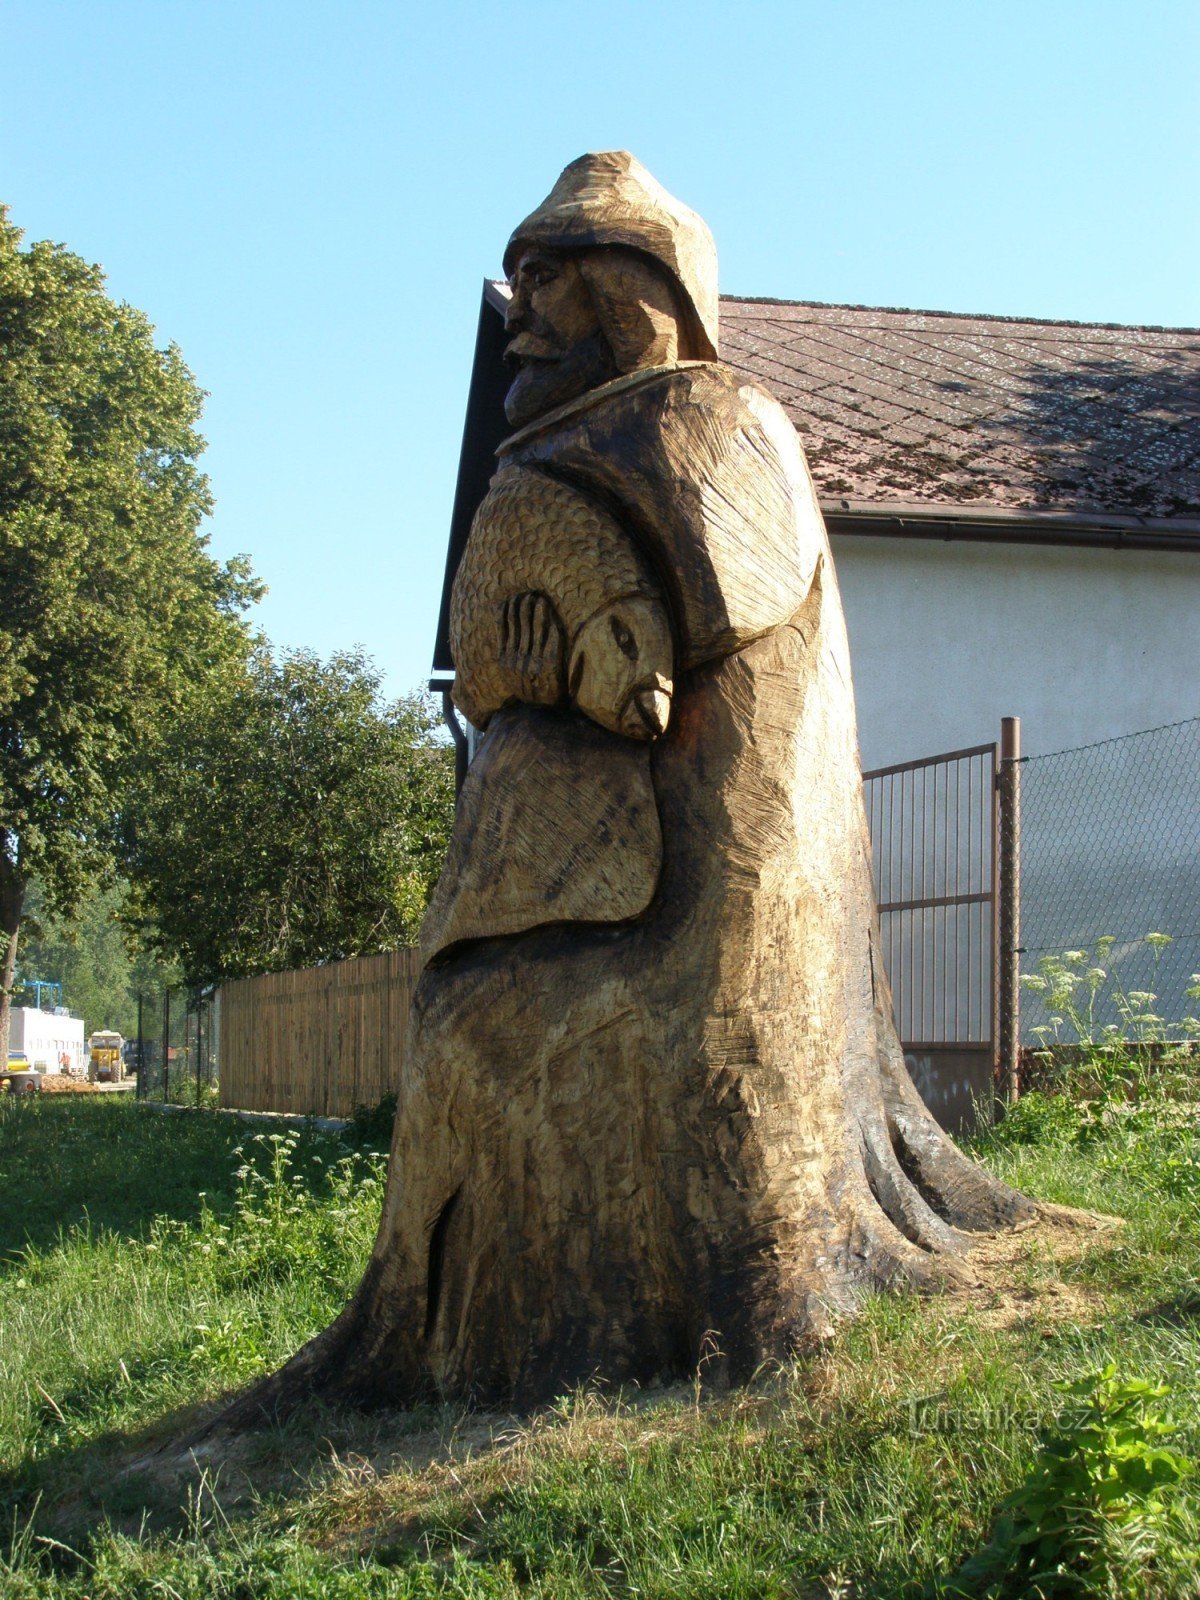 Jičín - trädskulpturer